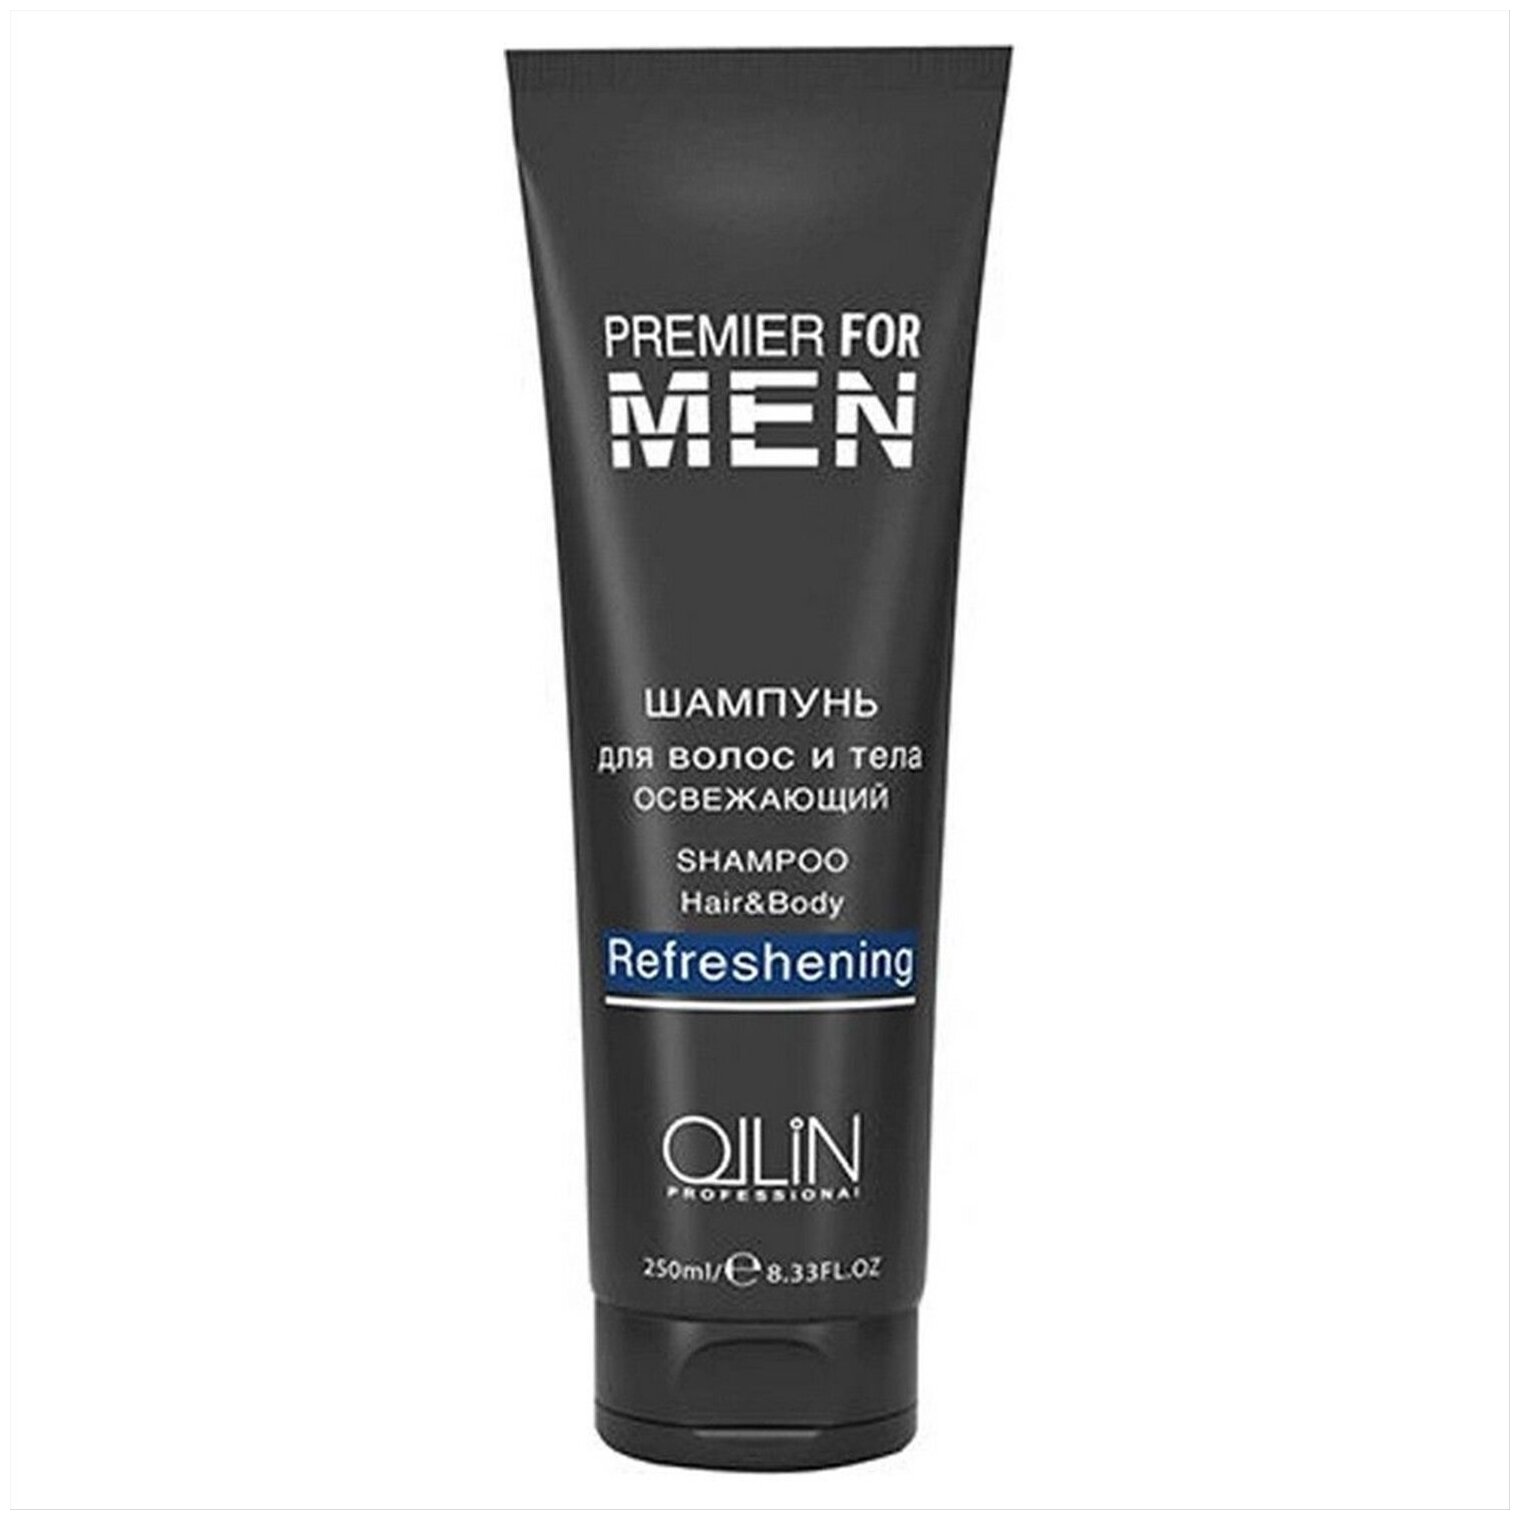 OLLIN Professional for men Шампунь для волос и тела Освежающий, 250 мл